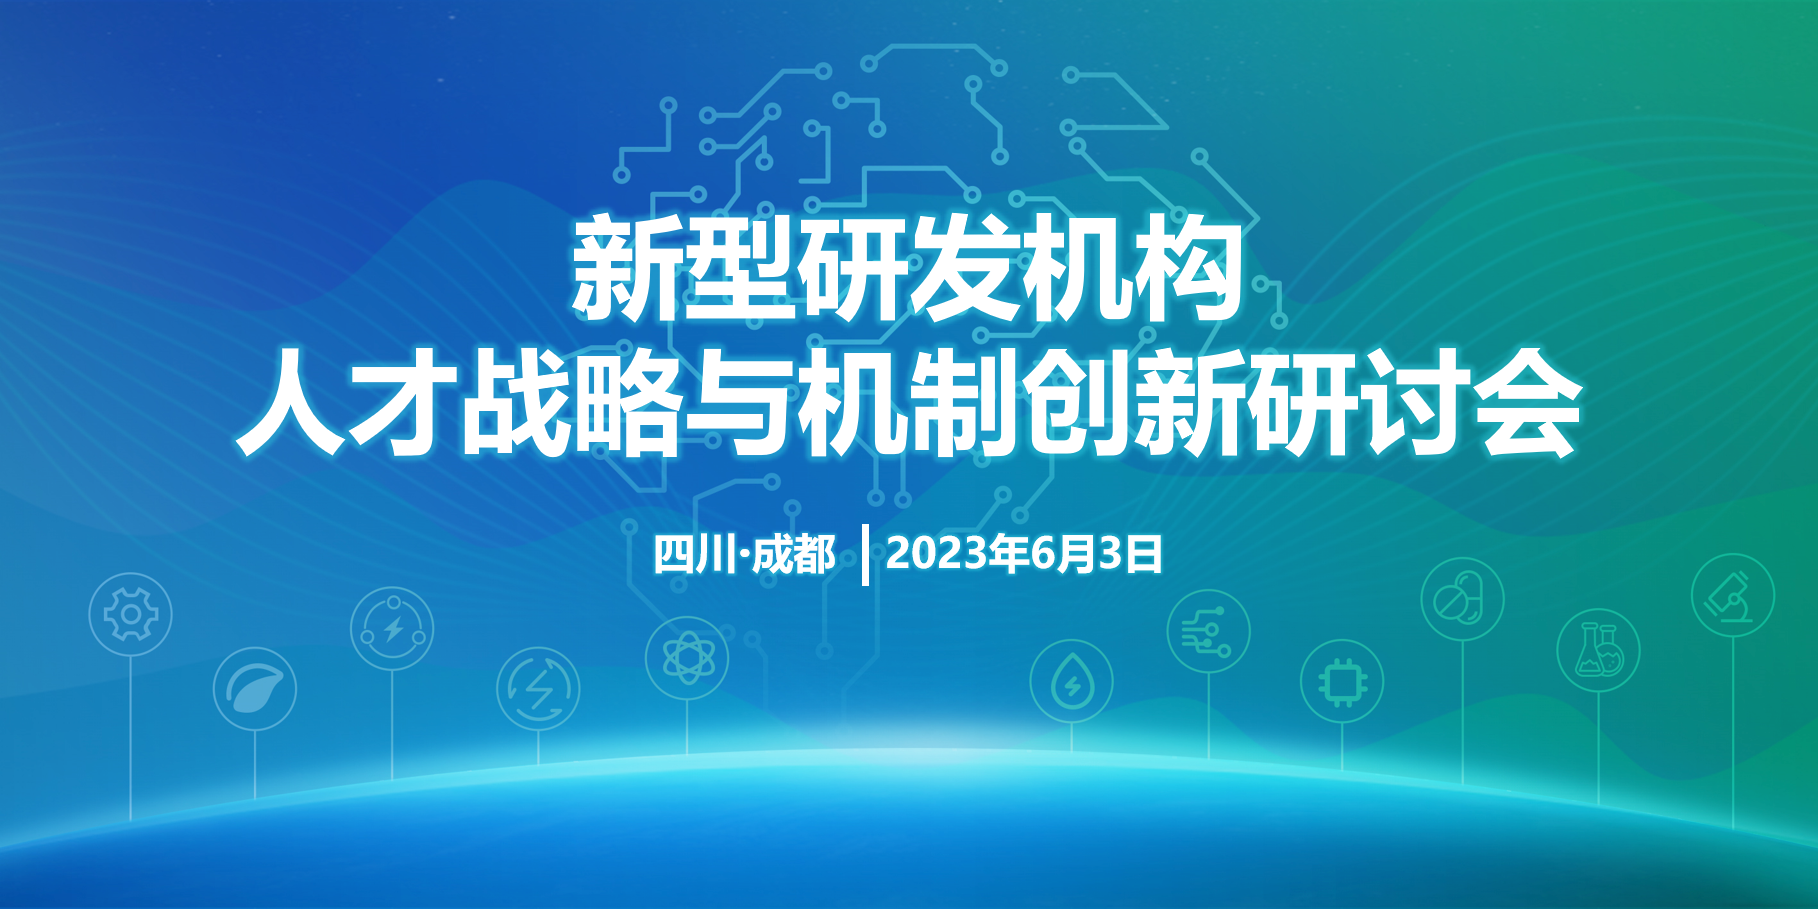 新型研发机构人才战略与机制创新研讨会将于6月3日在蓉举办